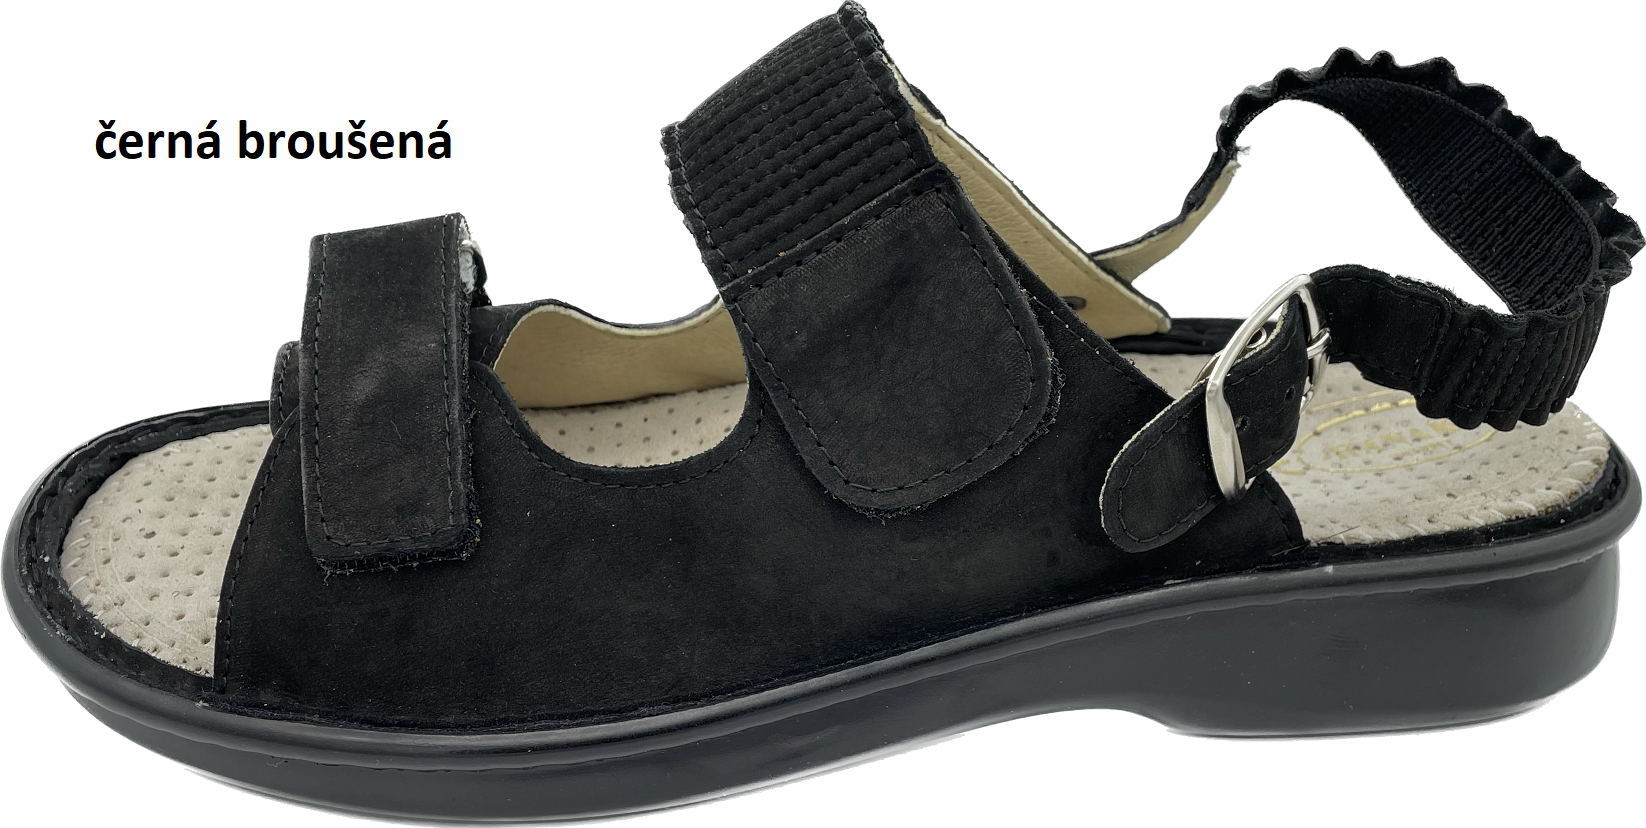 Boty Hanák vzor 418 P - černá podešev Barva usně: černá broušená, Velikosti obuvi: 40